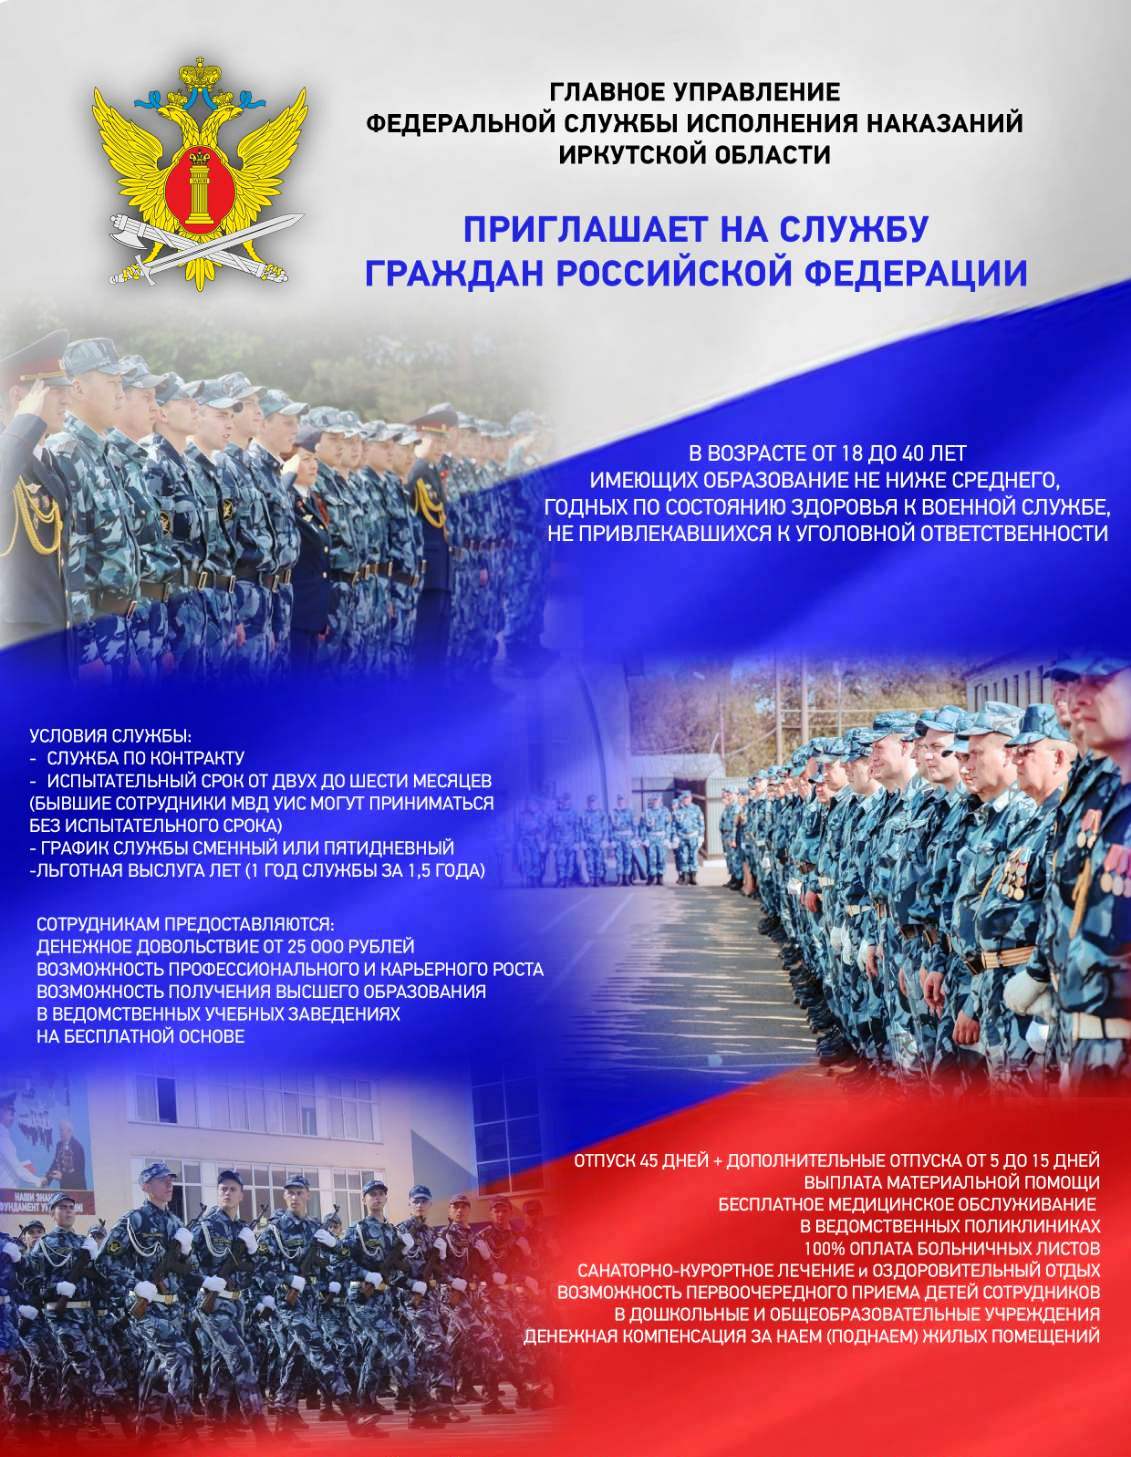 Главное Управление Федеральной службы исполнения наказаний Иркутской области приглашает на службу граждан Российской Федерации